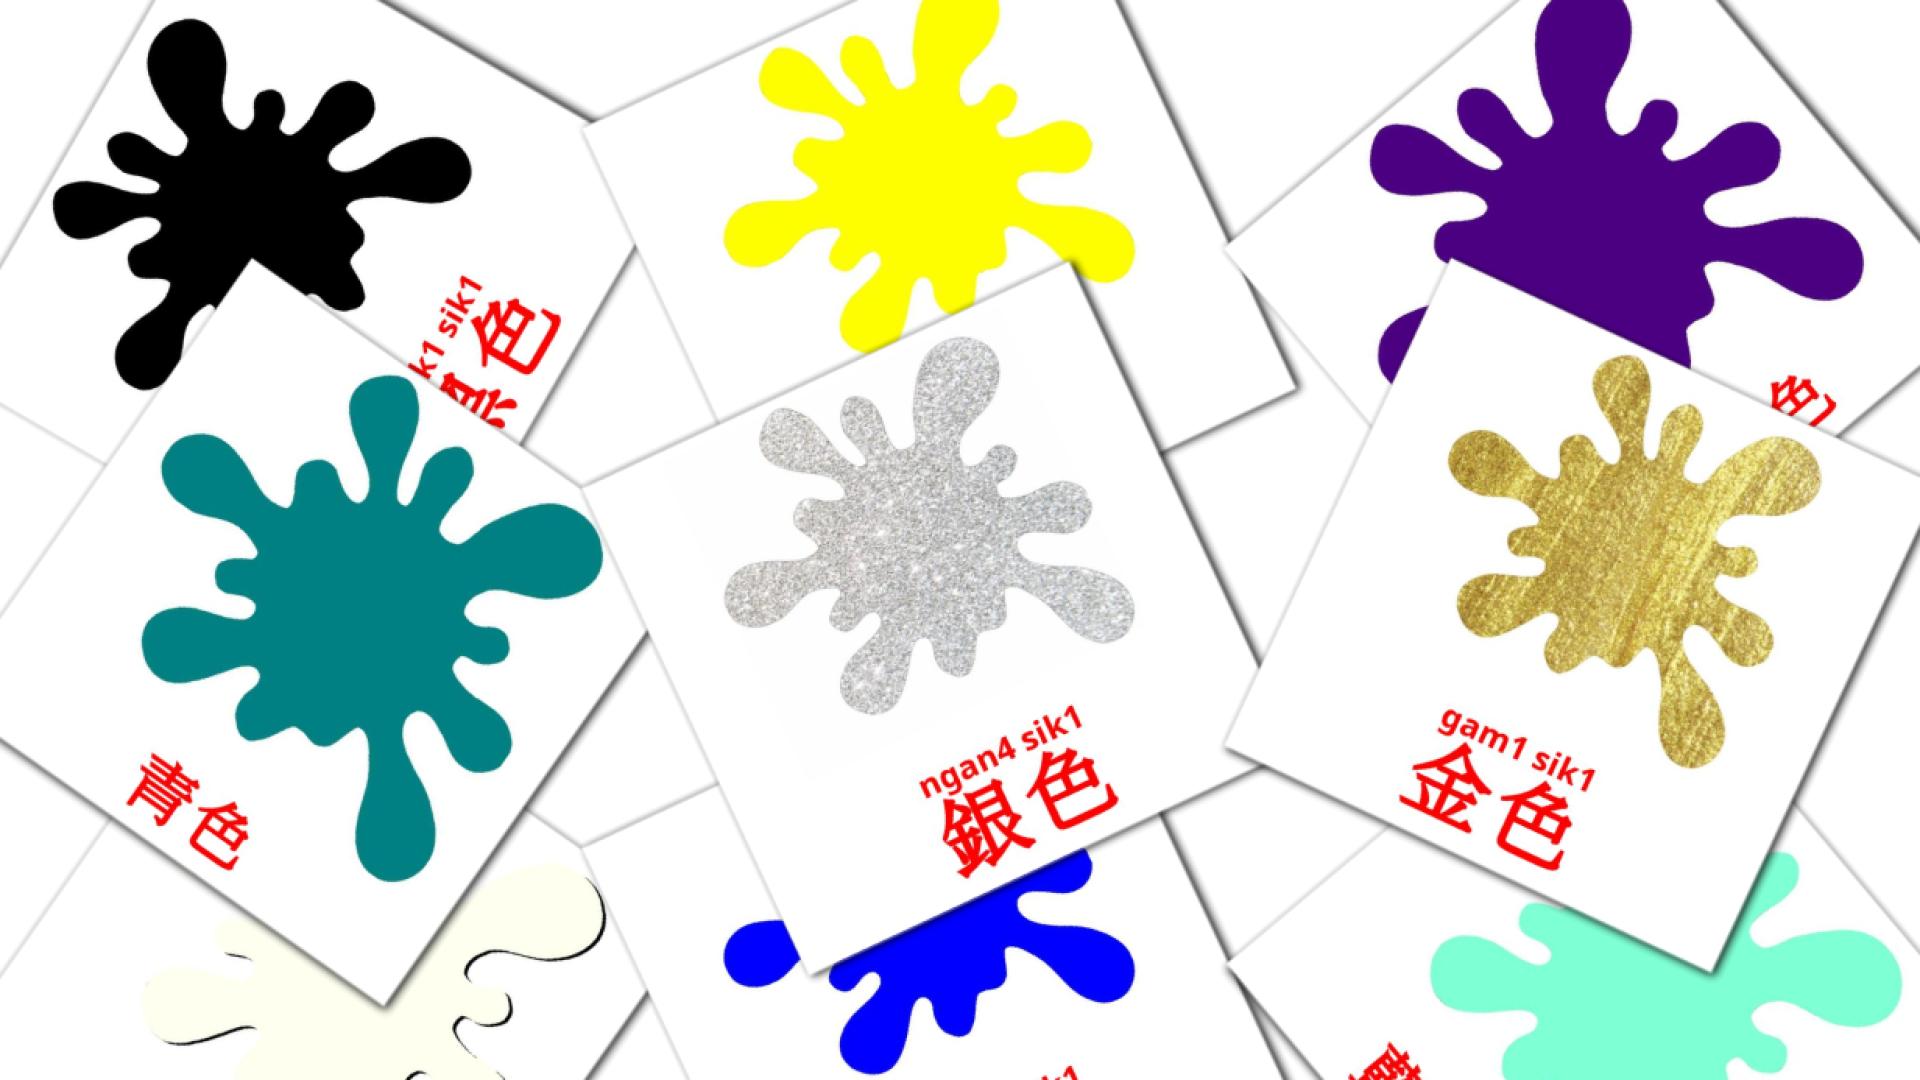 形式和颜色 cantonese(Colloquial) vocabulary flashcards